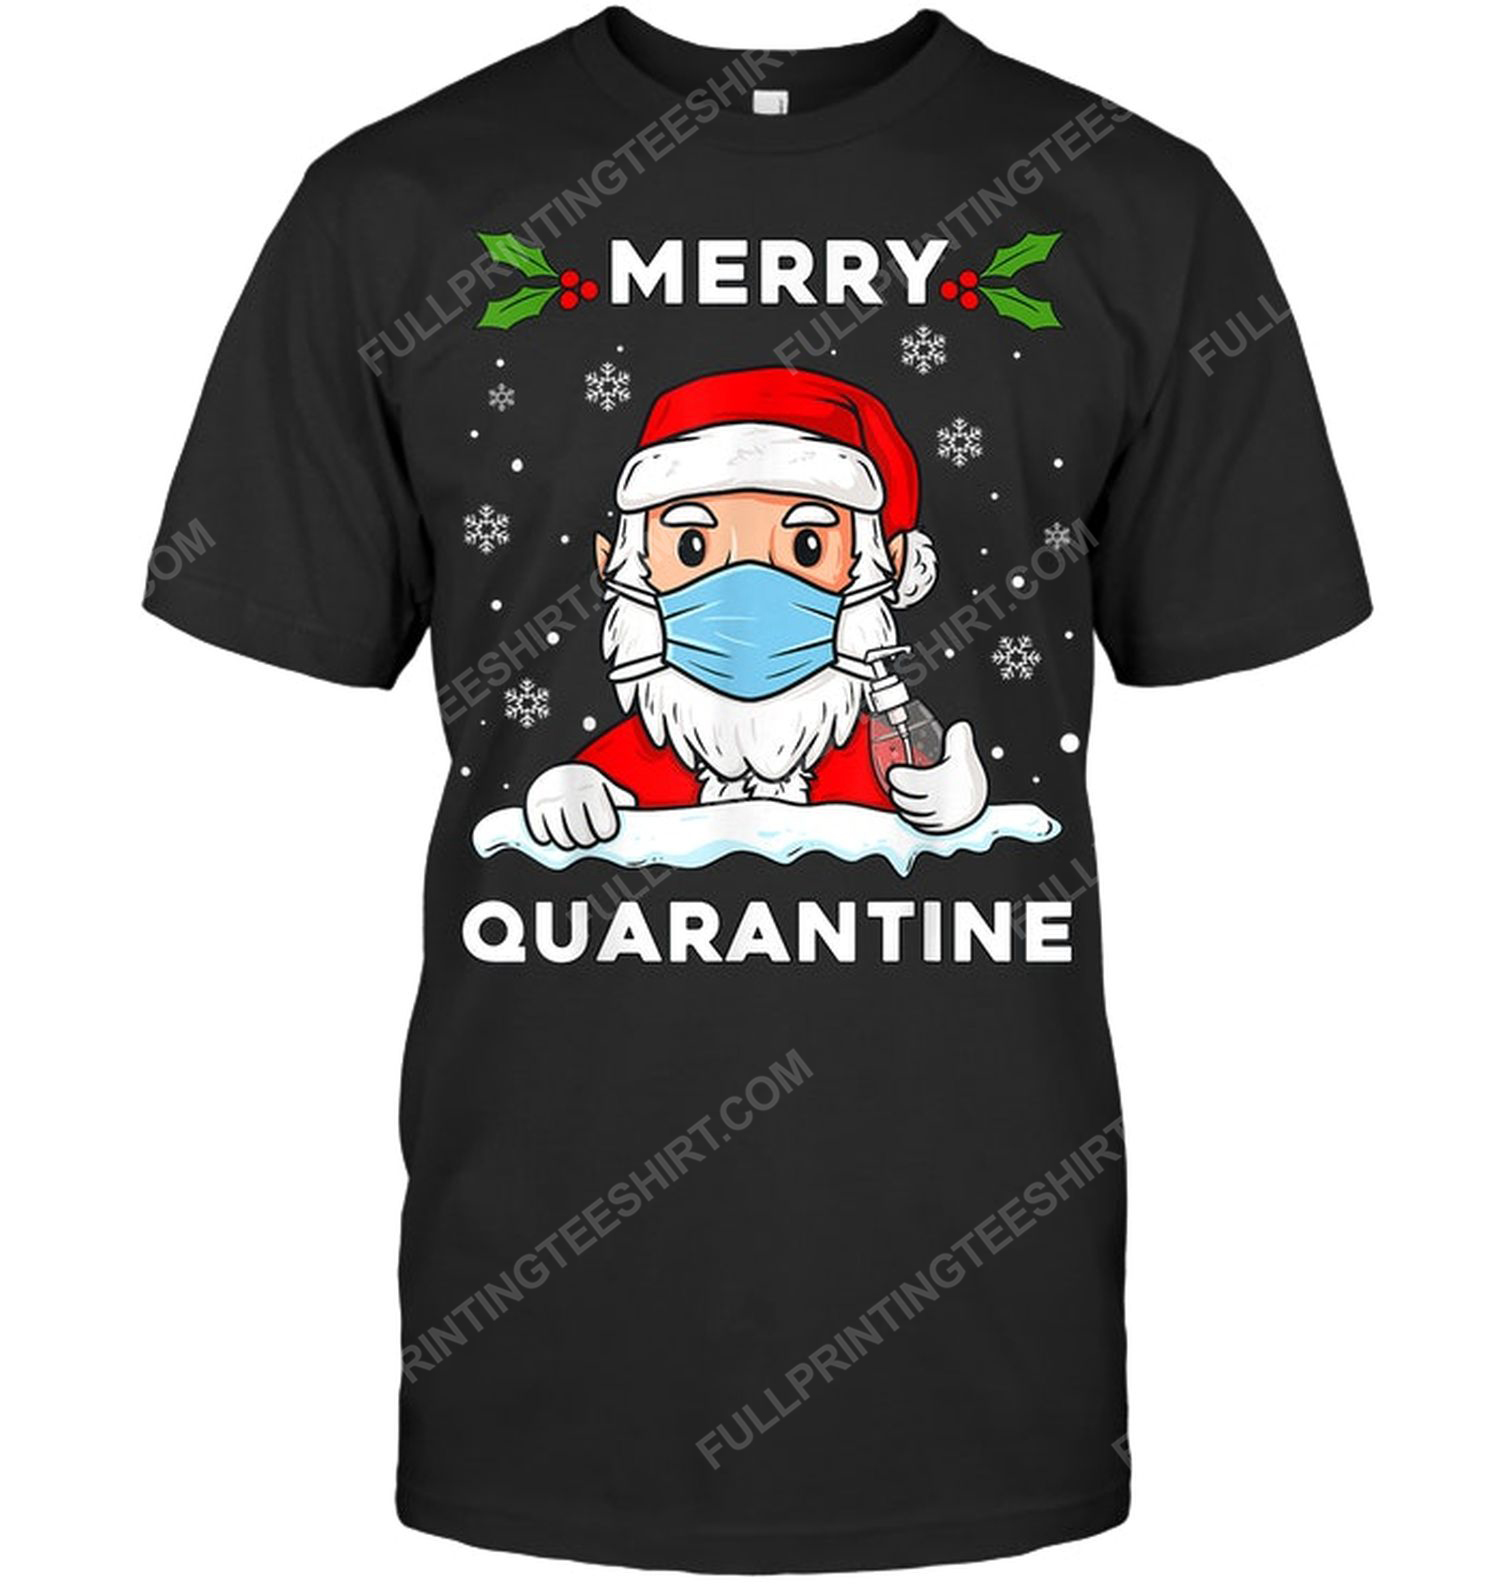 Merry quarantine christmas santa claus tshirt